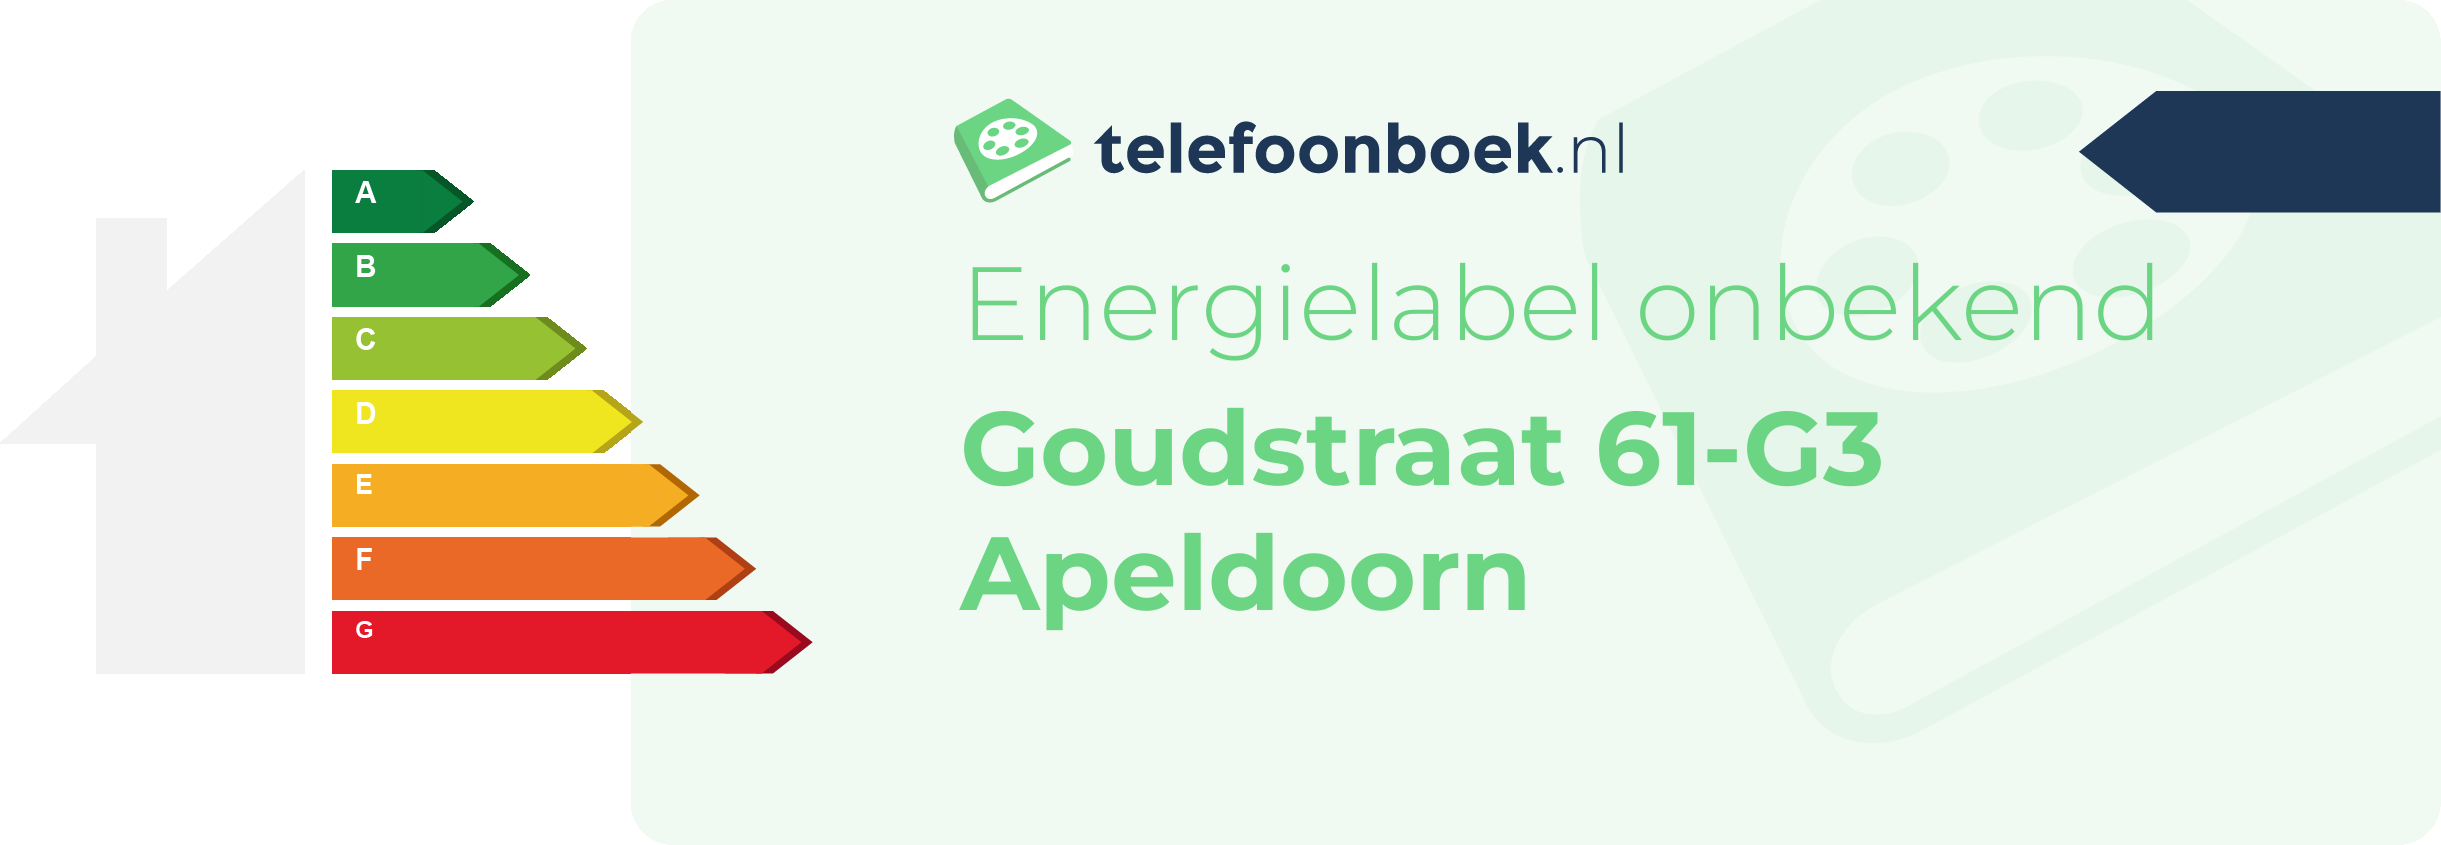 Energielabel Goudstraat 61-G3 Apeldoorn